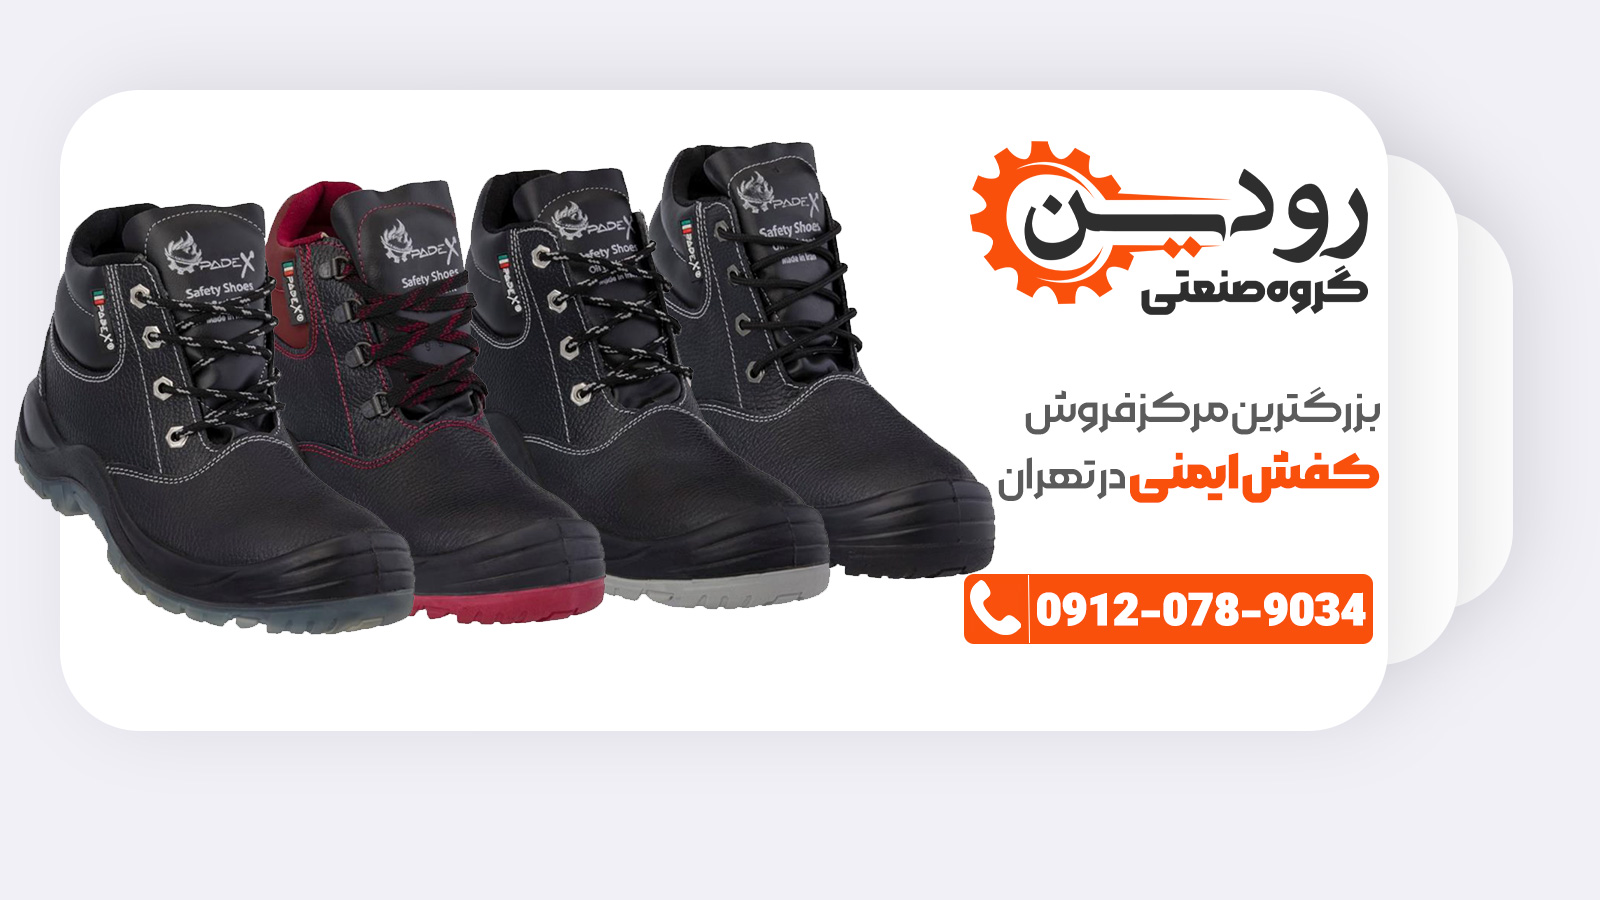 اگر آدرس مرکز خرید کفش ایمنی تهران را ندارید، به شرکت ما مراجعه کنید.